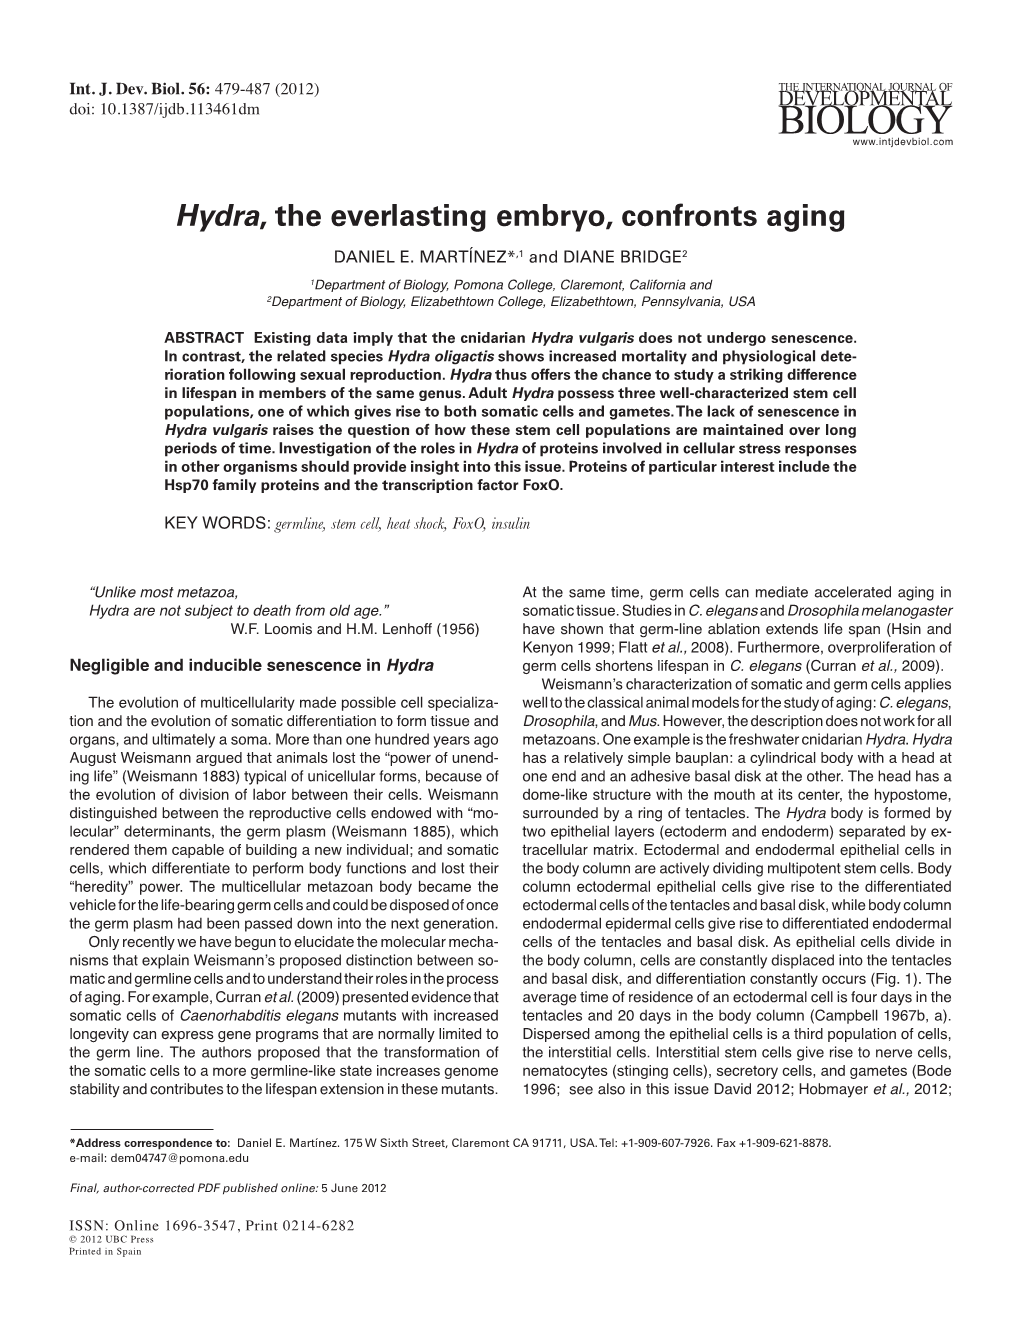 Hydra, the Everlasting Embryo, Confronts Aging DANIEL E